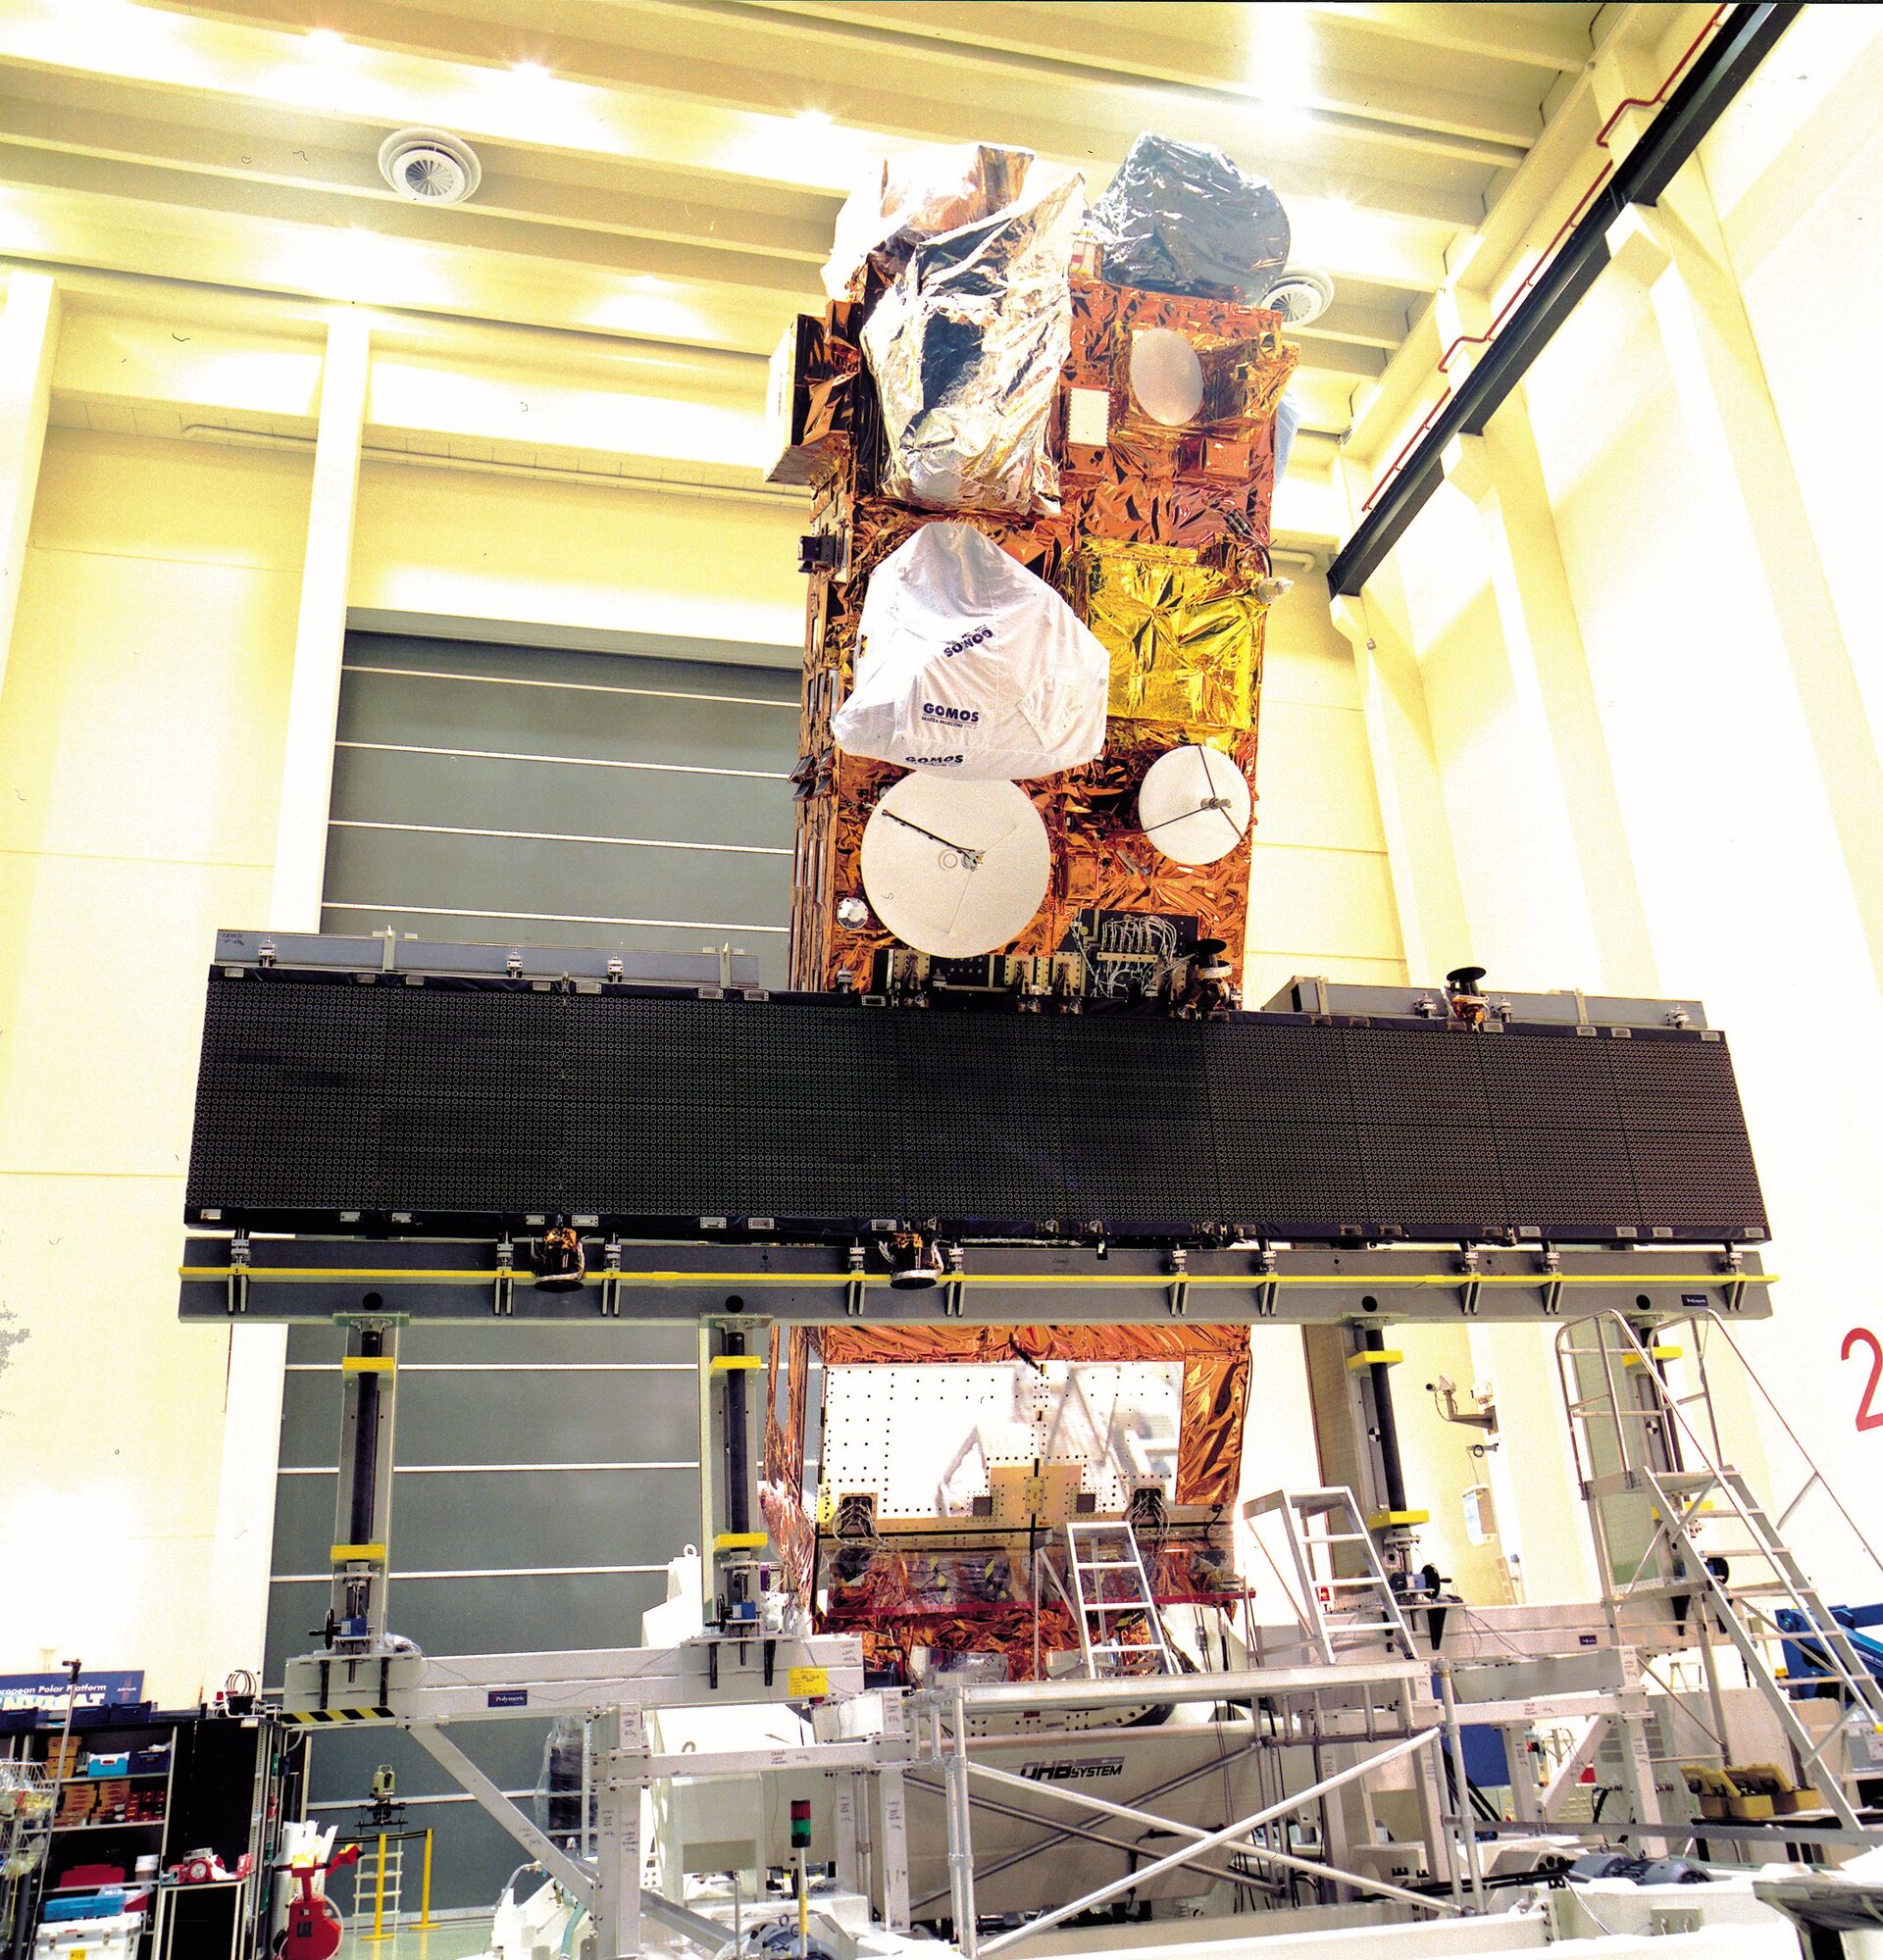 Envisat satellite preparation in ESTEC' s facilities